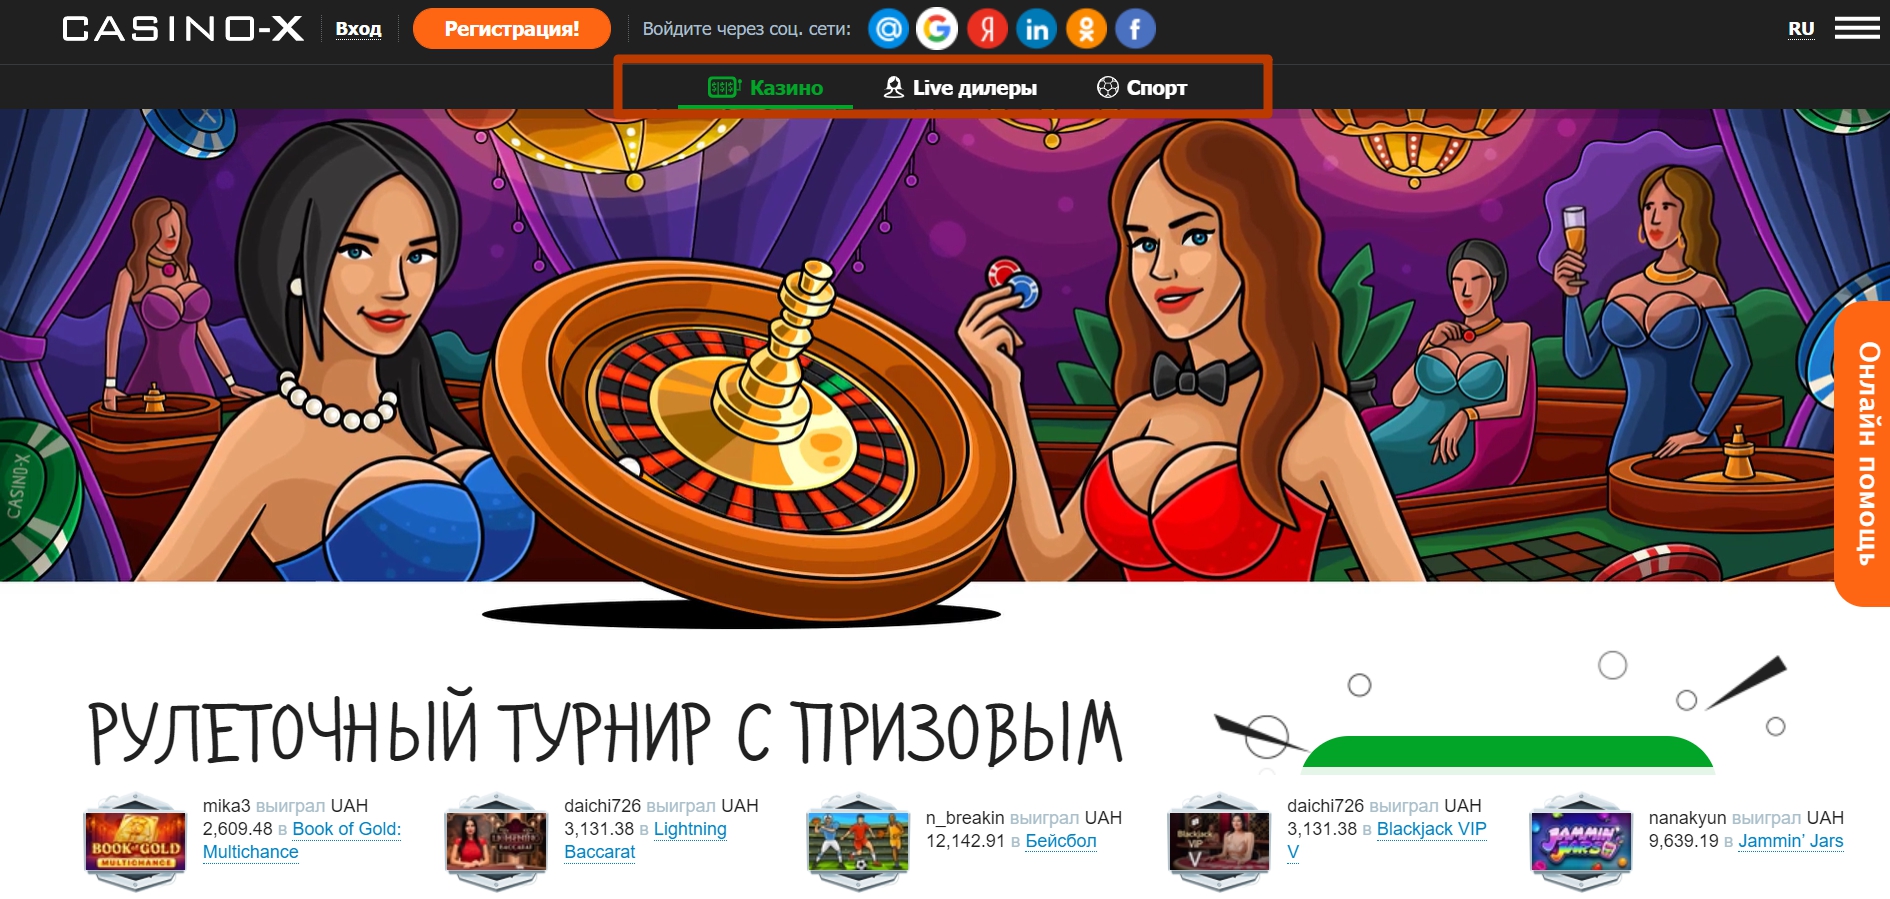 Casino x официальный сайт casinox ri xyz самые лучшие интернет казино россии на рубли